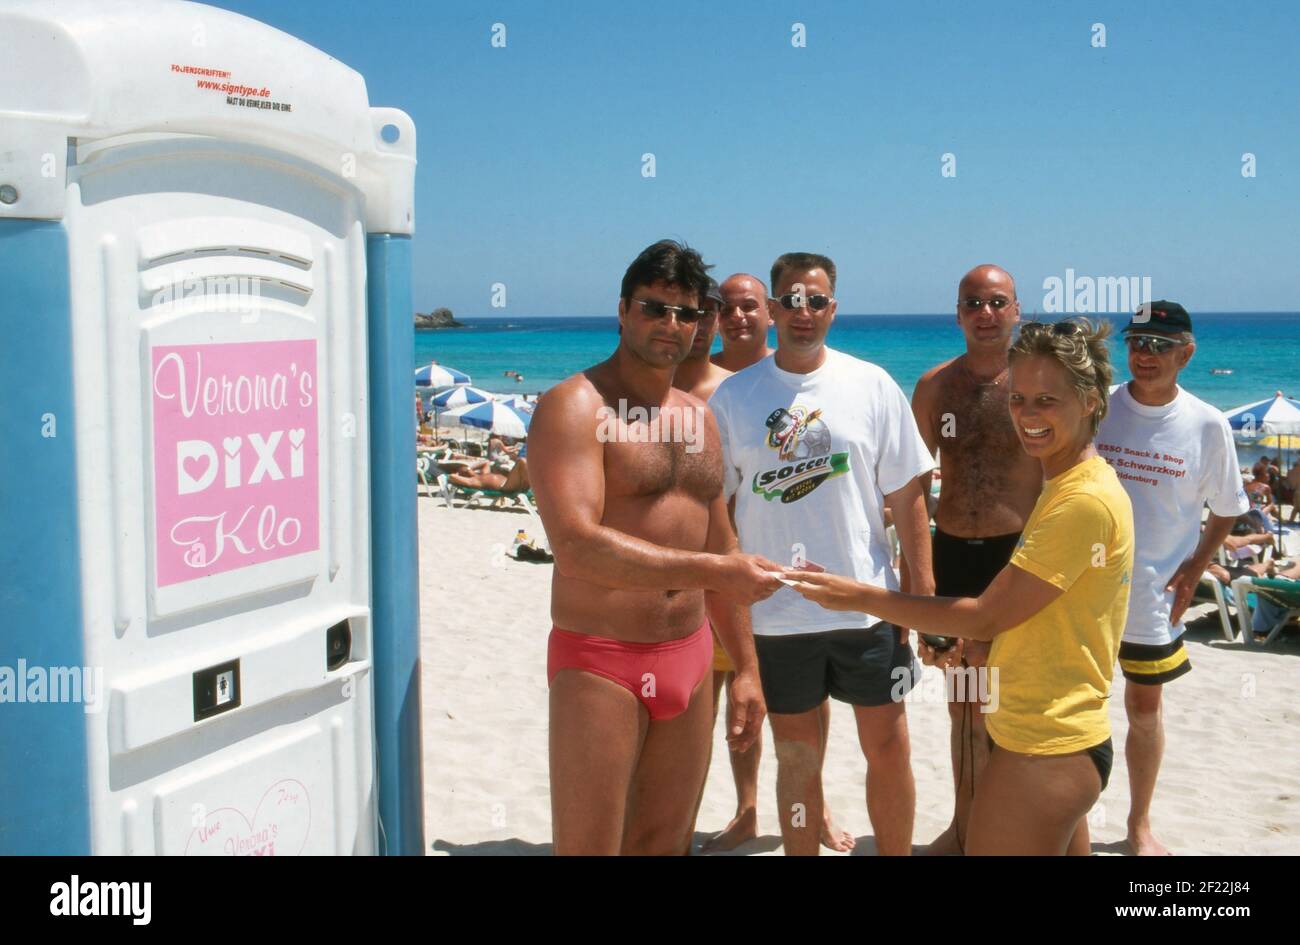 Touristen bezahlen für die Nutzung vom Dixi Klo vom Auftirtt von Verona Feldbusch bei 'Big Brother' als Touristenattraktion am Strand von Mallorca, Spanien 2000. Stock Photo